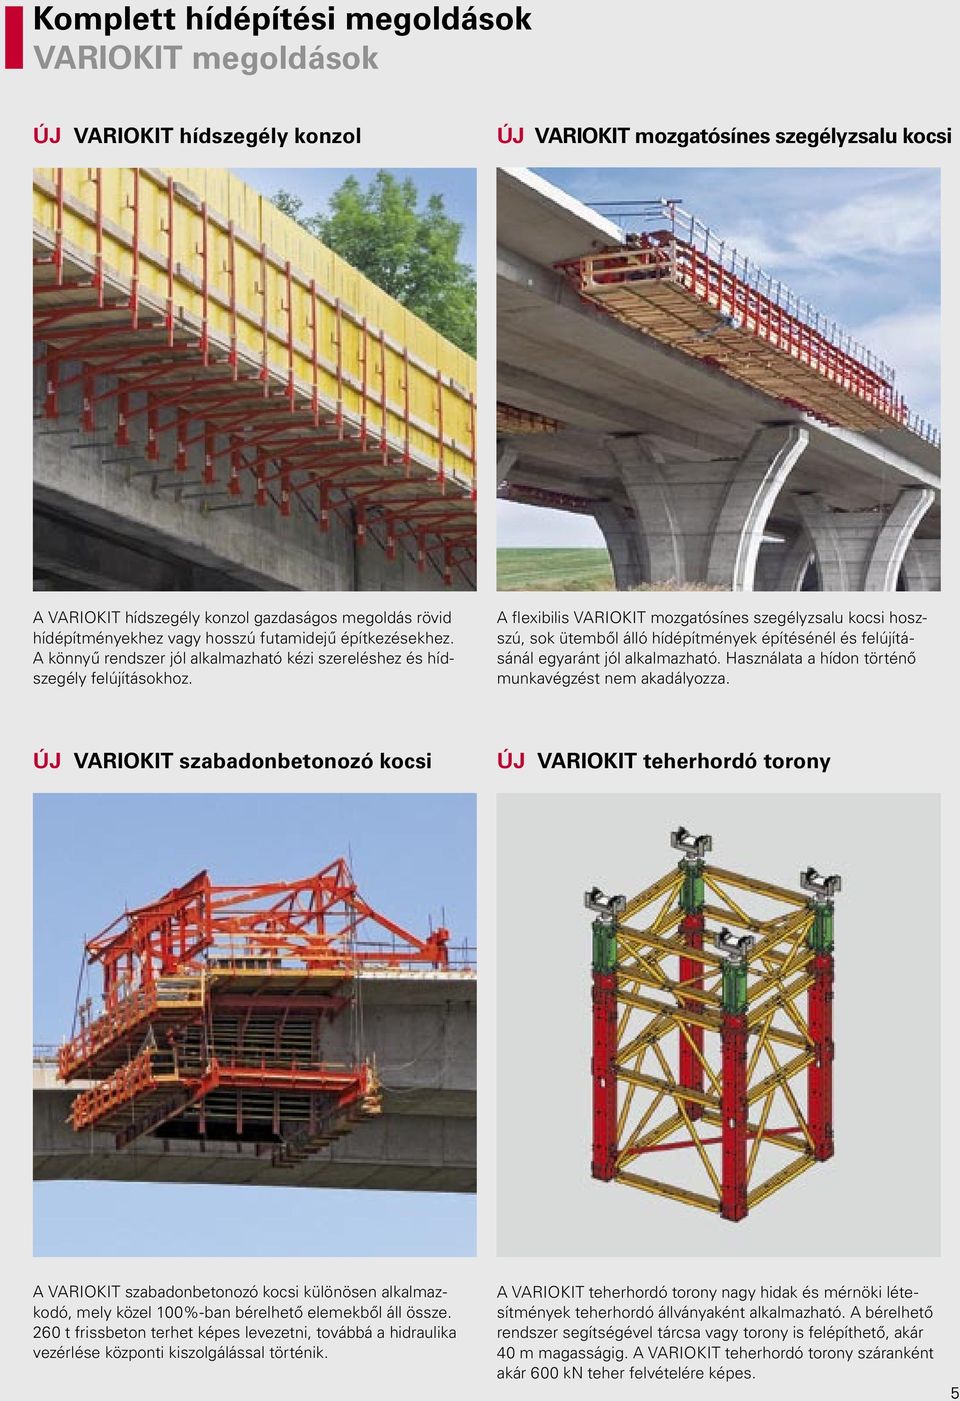 A flexibilis VARIOKIT mozgatósínes szegélyzsalu kocsi hoszszú, sok ütemből álló hídépítmények építésénél és felújításánál egyaránt jól alkalmazható.